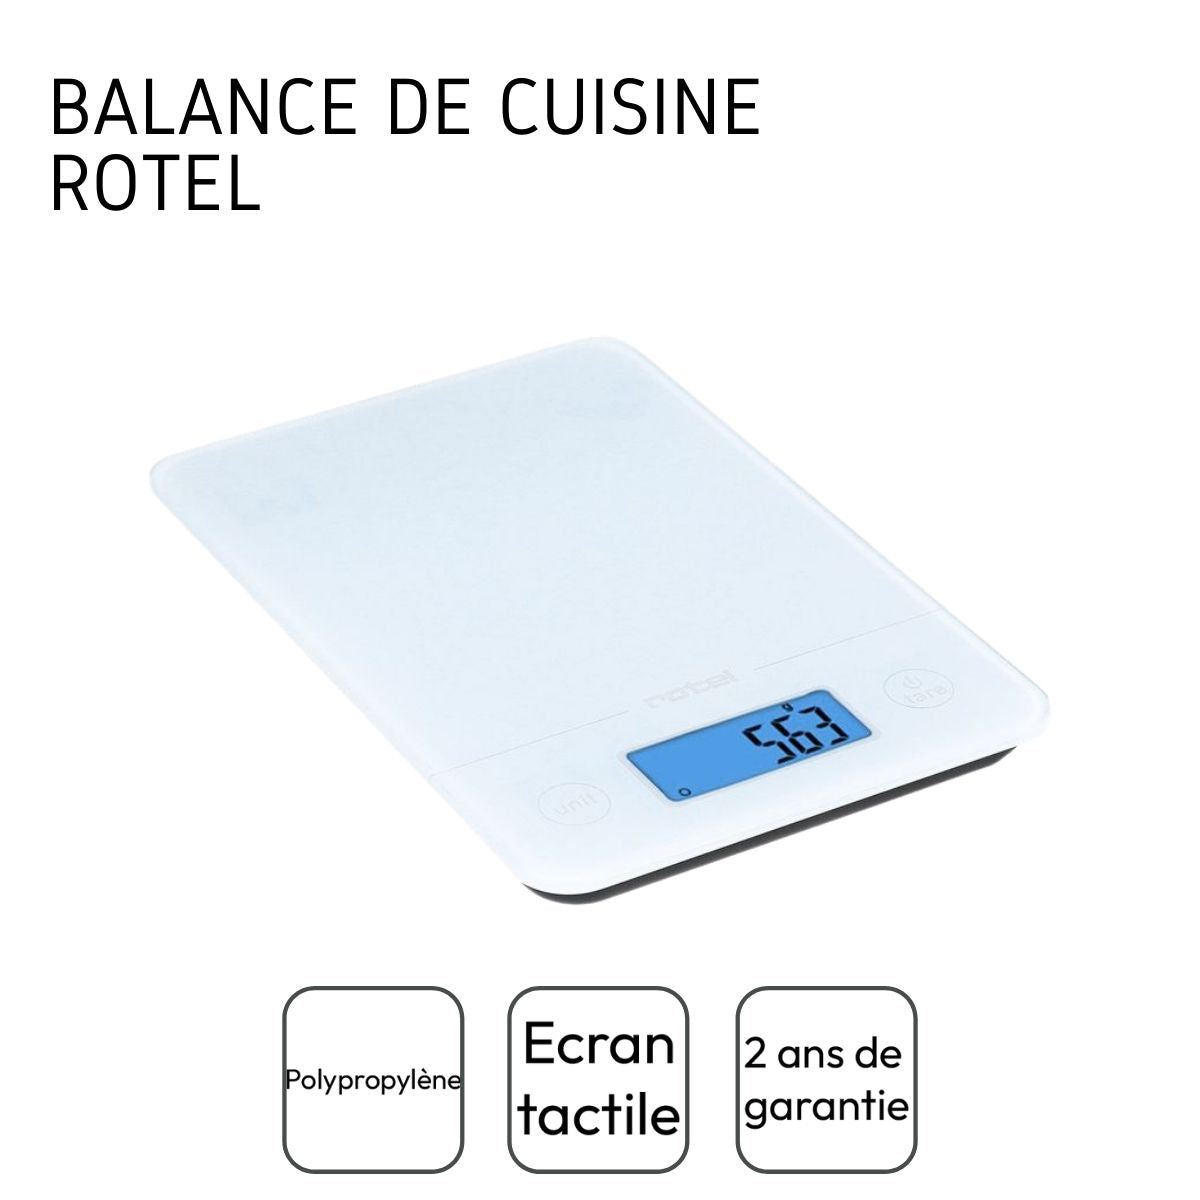 Balance de cuisine Blanche électronique écran tactile Rotel